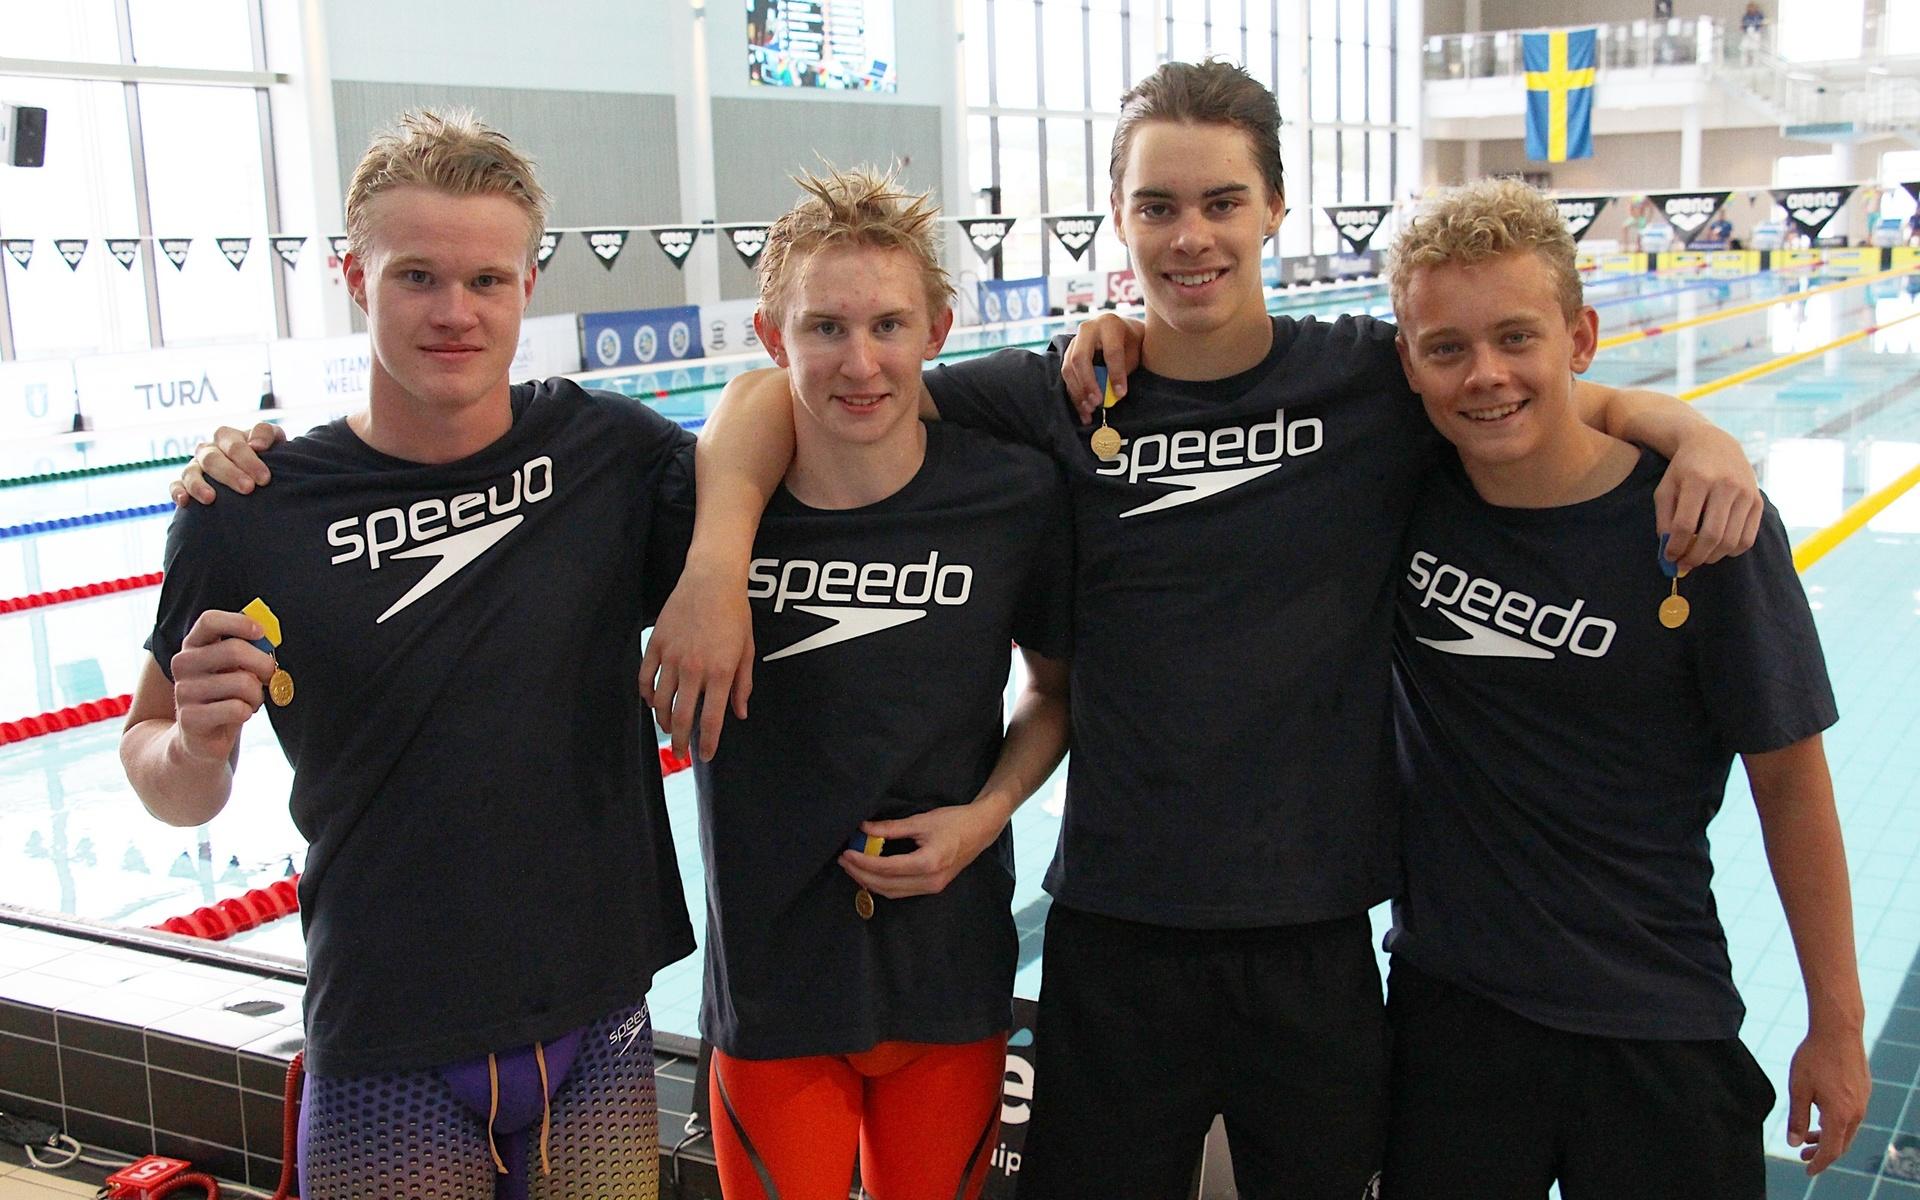 Alvin Välkki, Måns Evertsson, Felix Jedbratt och Max Swegmark från Mölndals allmänna simsällskap är nöjda över hur tävlingen arrangerats och har kammat hem två-lagguld till klubben.